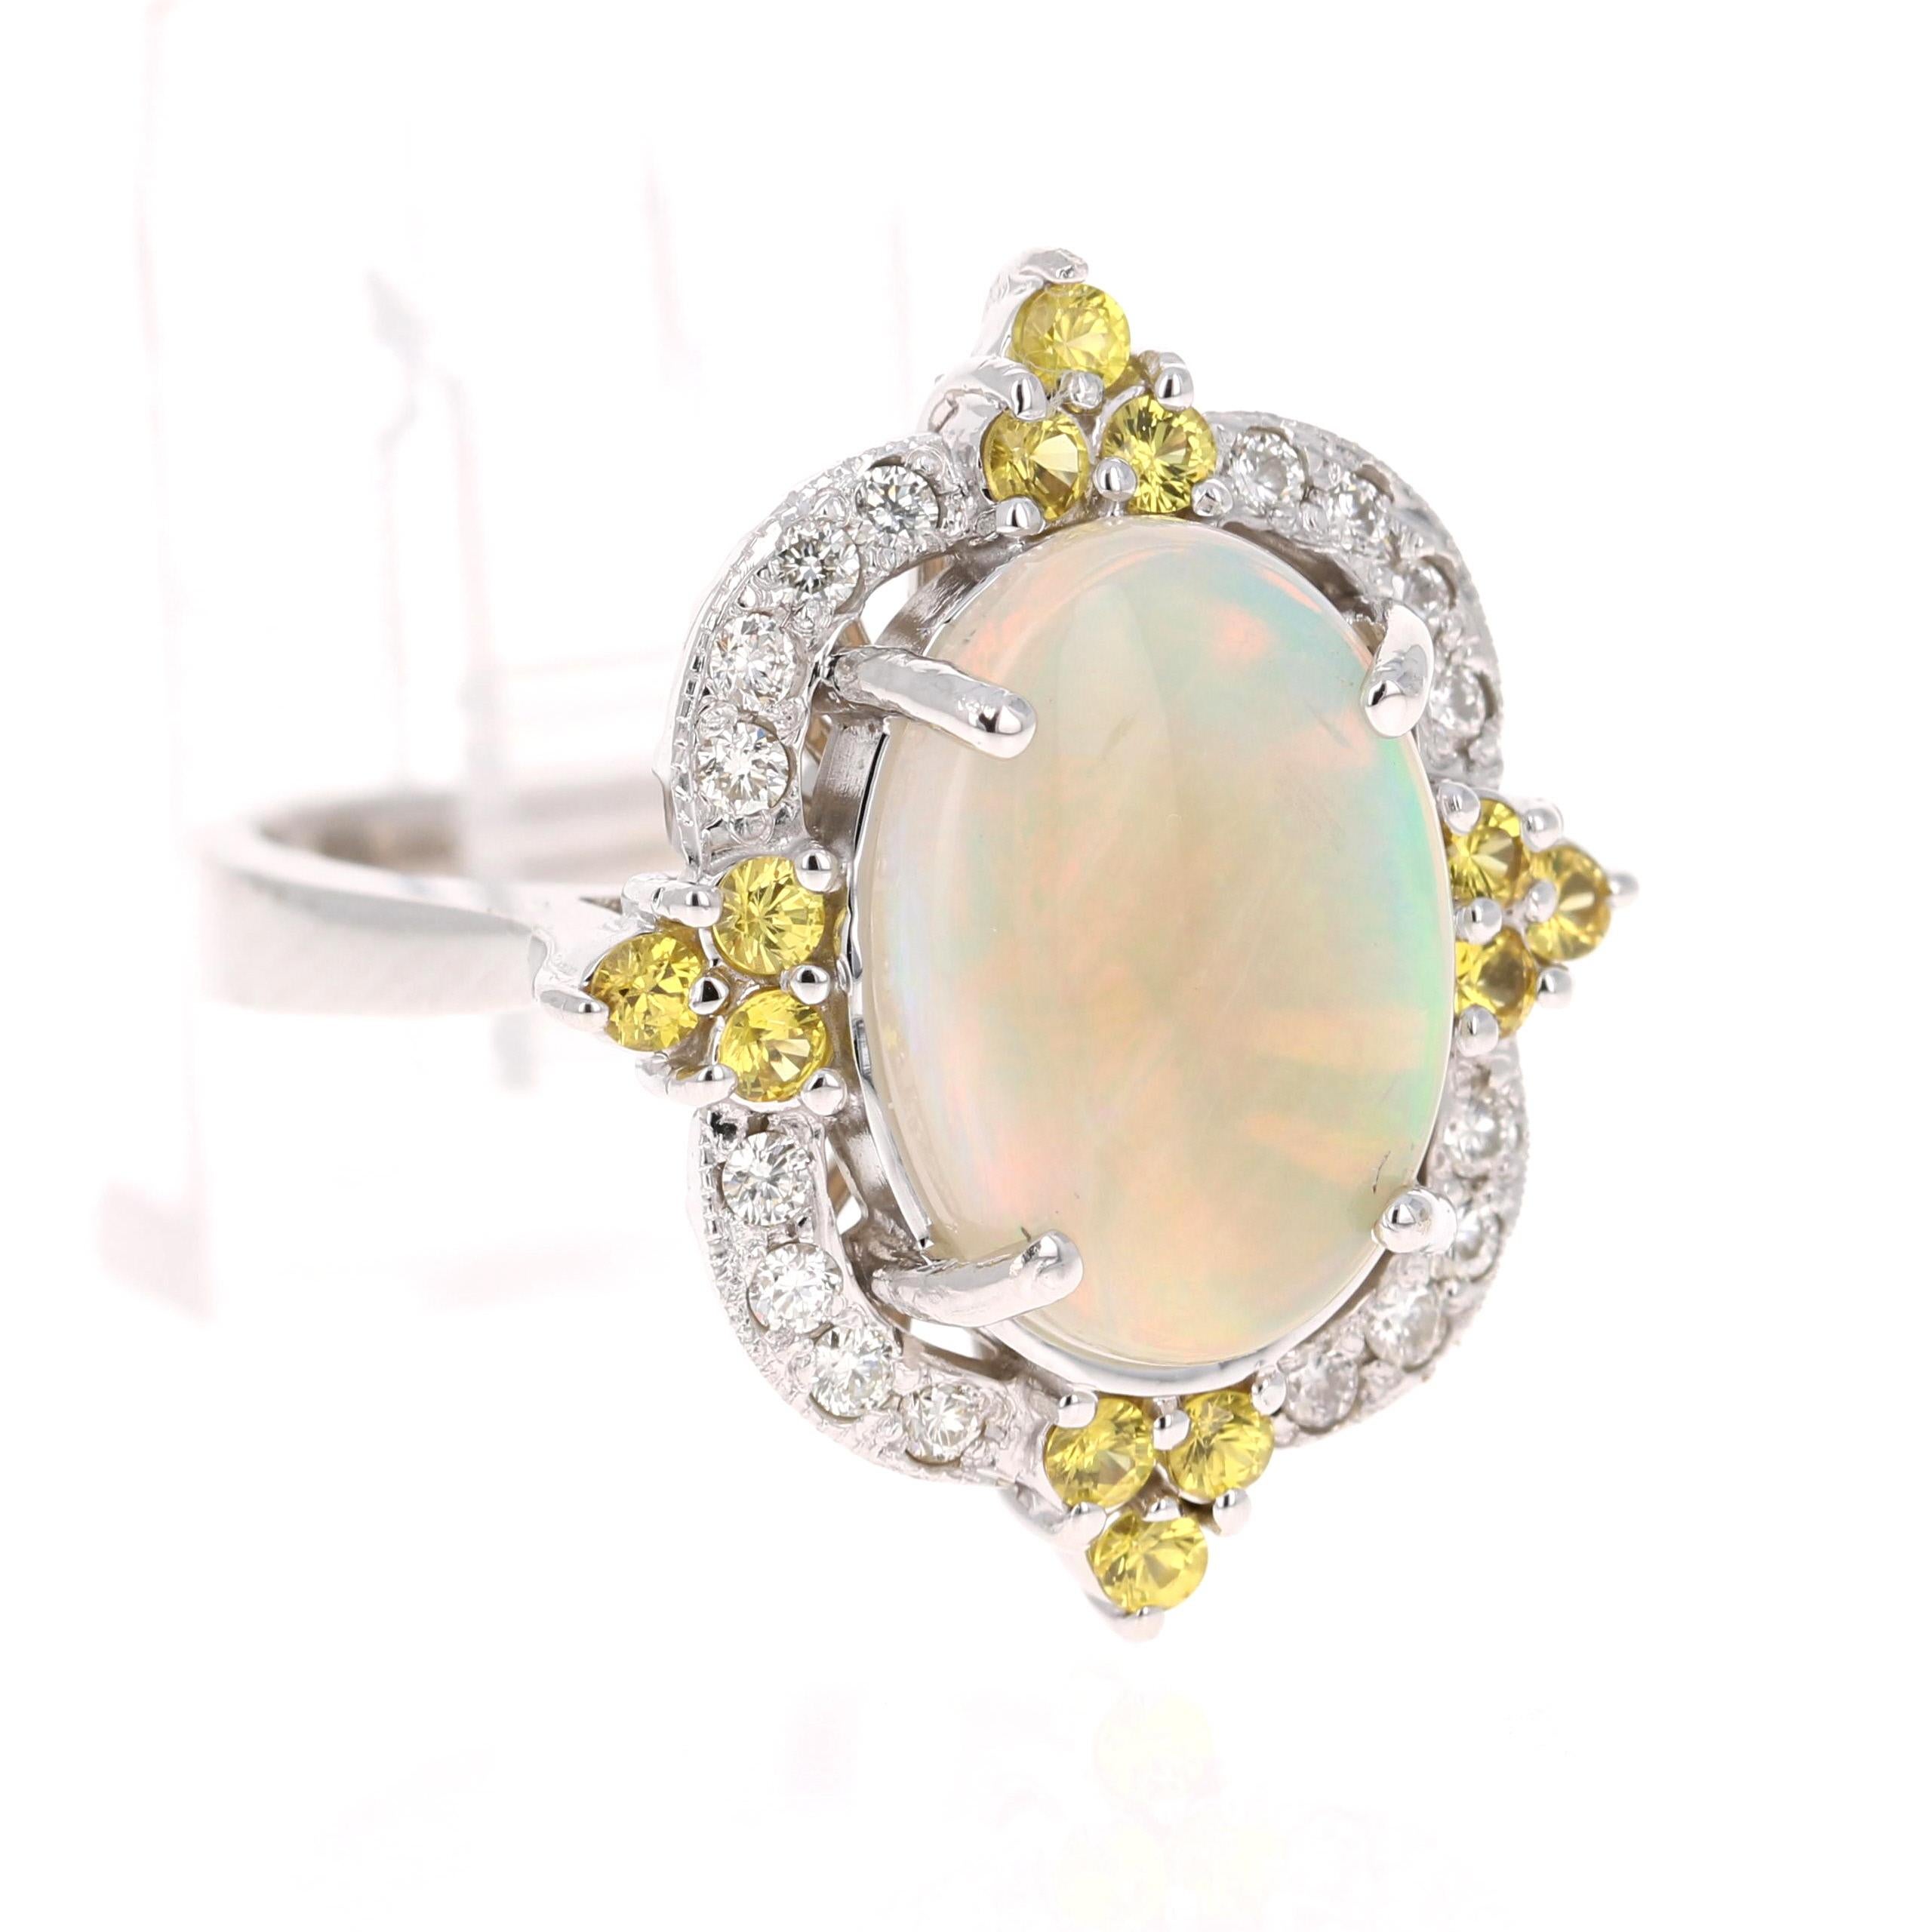 Opulenter Ring mit Opal, gelbem Saphir und Diamant aus 14 Karat Weißgold.

Der wunderschöne Opal im Ovalschliff äthiopischen Ursprungs mit seinen auffälligen Farbschattierungen wiegt 2,78 Karat. Der Opal hat Farbschattierungen von Grün, Orange, Gelb